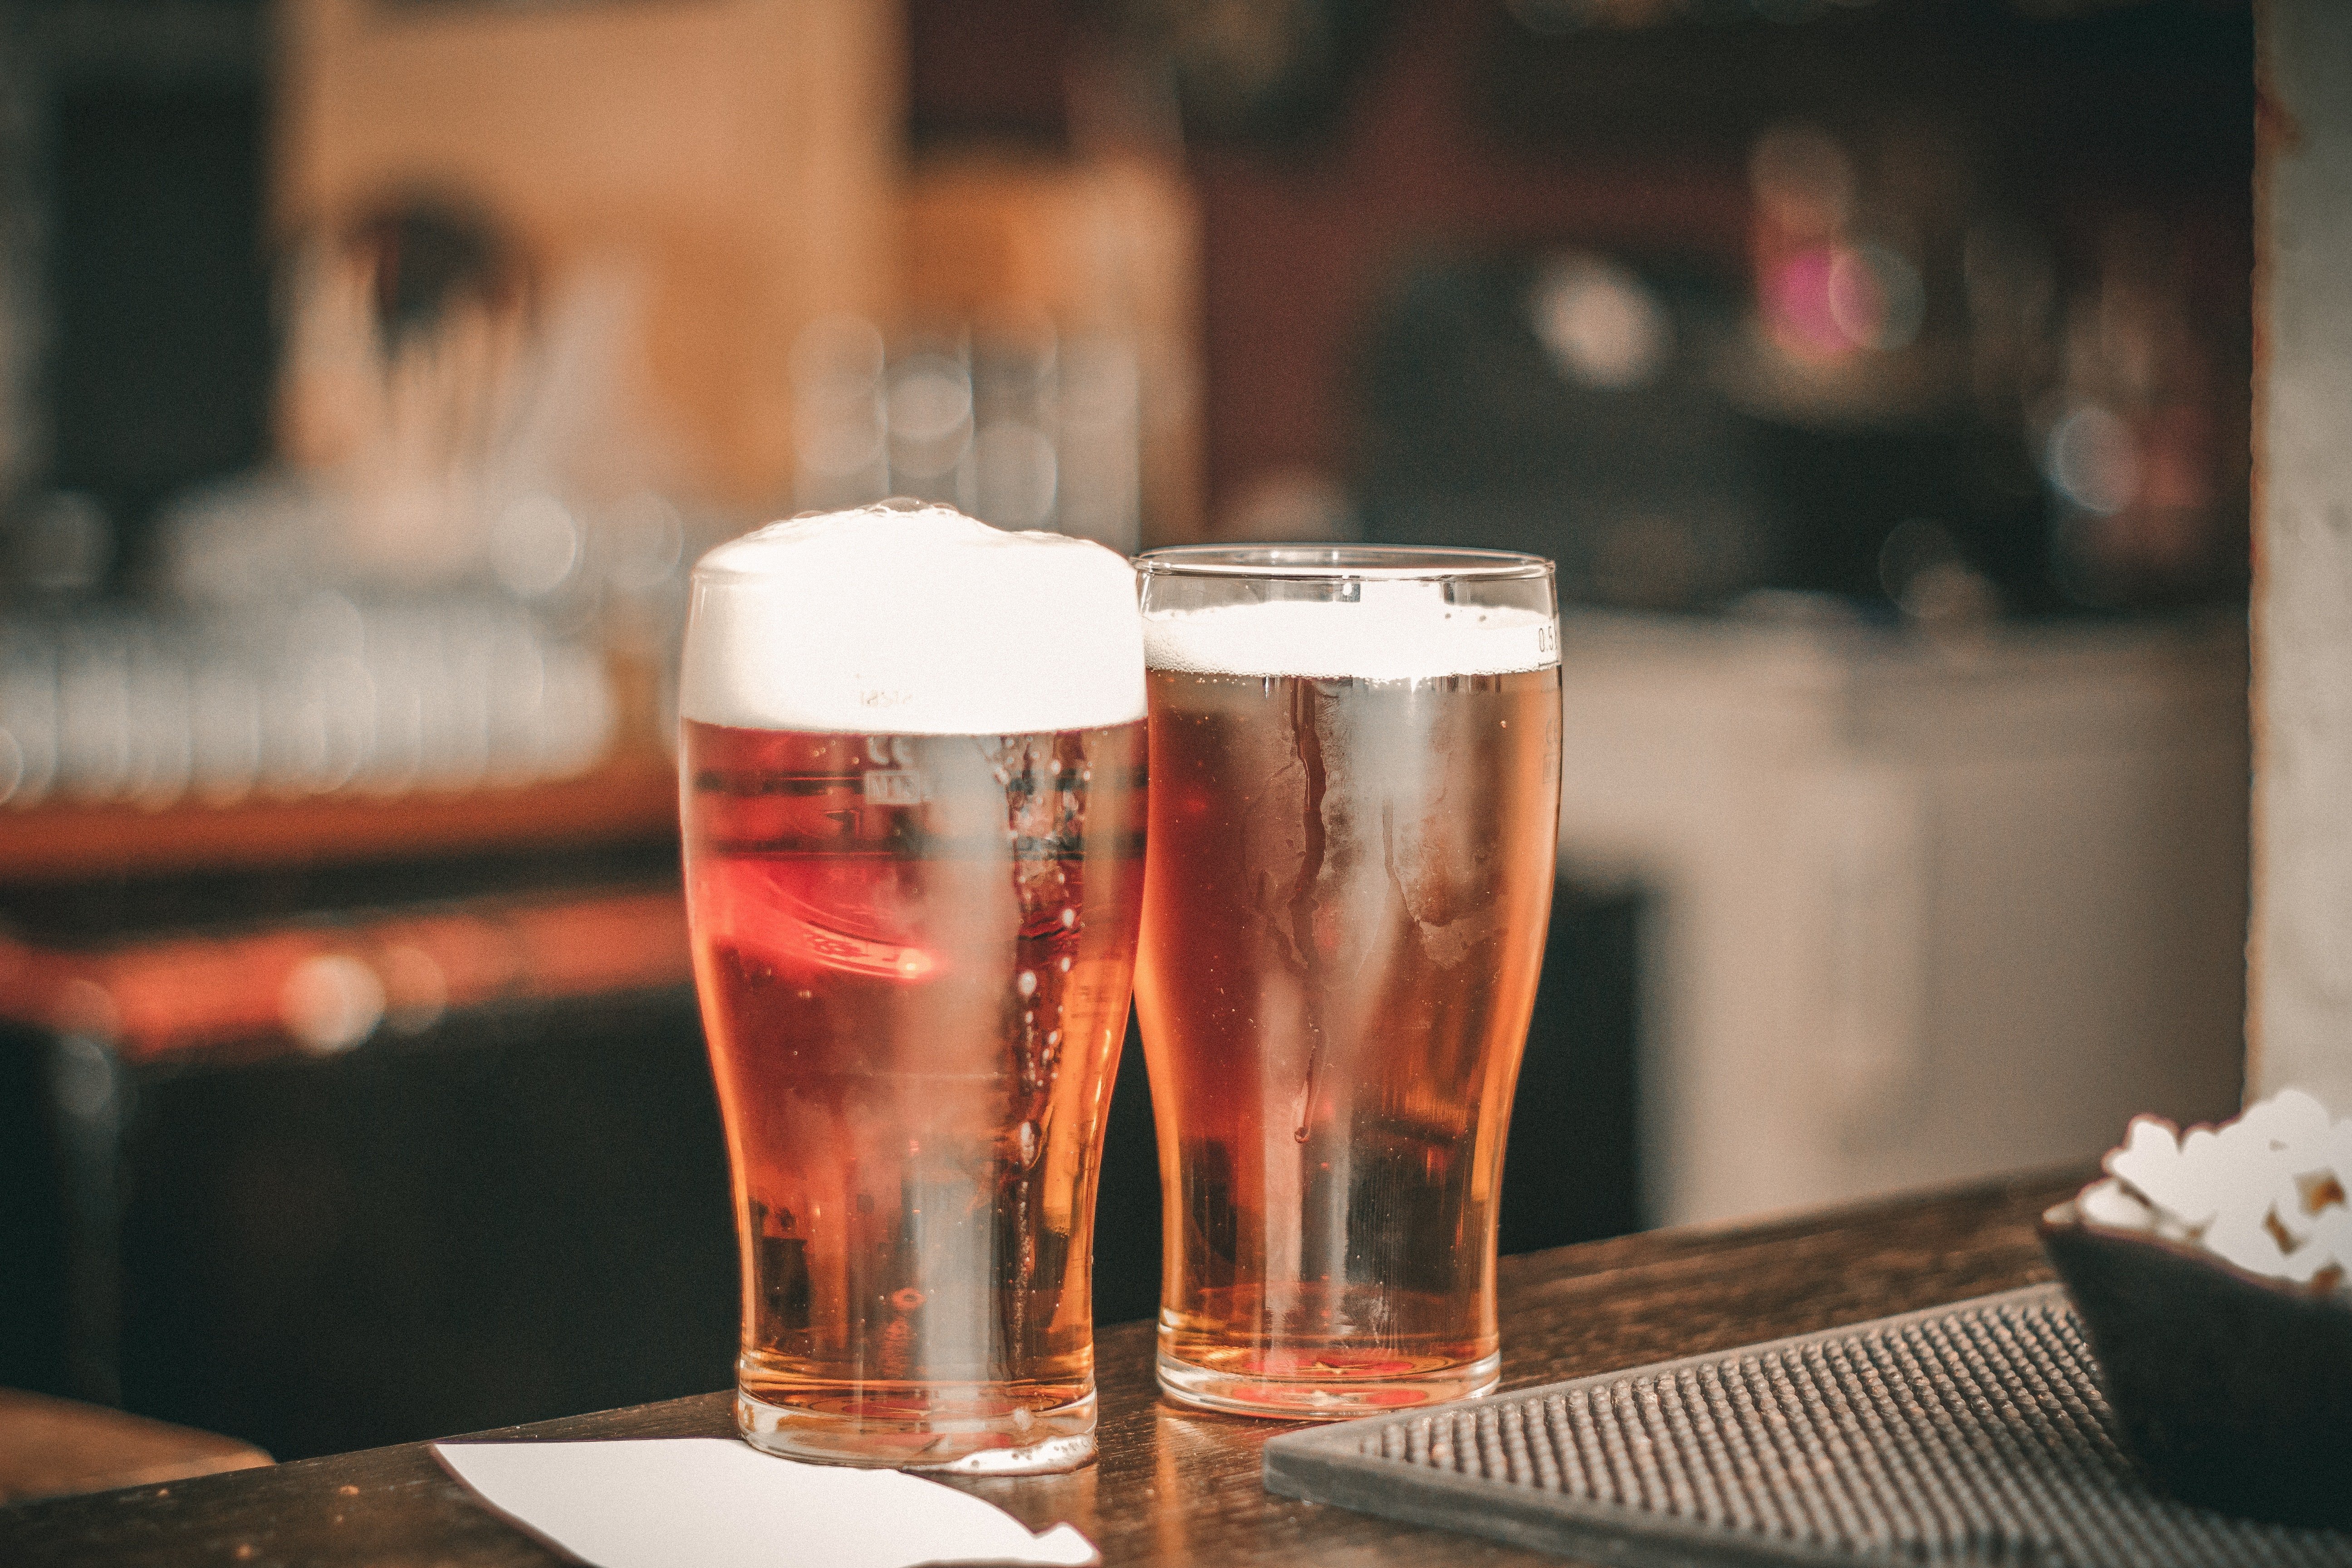 Two full beer glasses. | Source: Matan Segev/Pexels